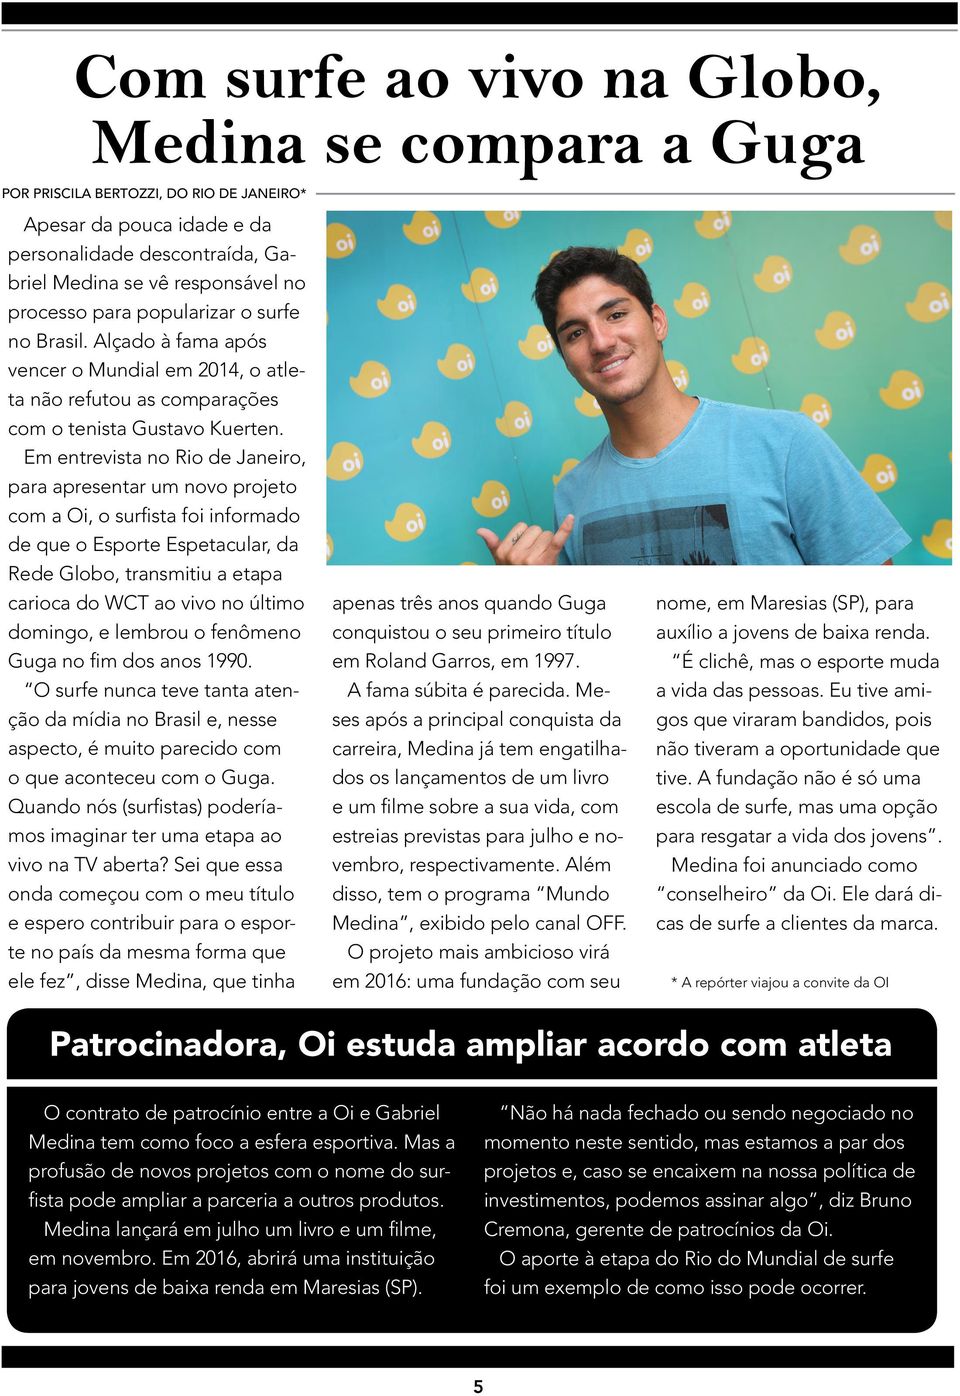 Em entrevista no Rio de Janeiro, para apresentar um novo projeto com a Oi, o surfista foi informado de que o Esporte Espetacular, da Rede Globo, transmitiu a etapa carioca do WCT ao vivo no último